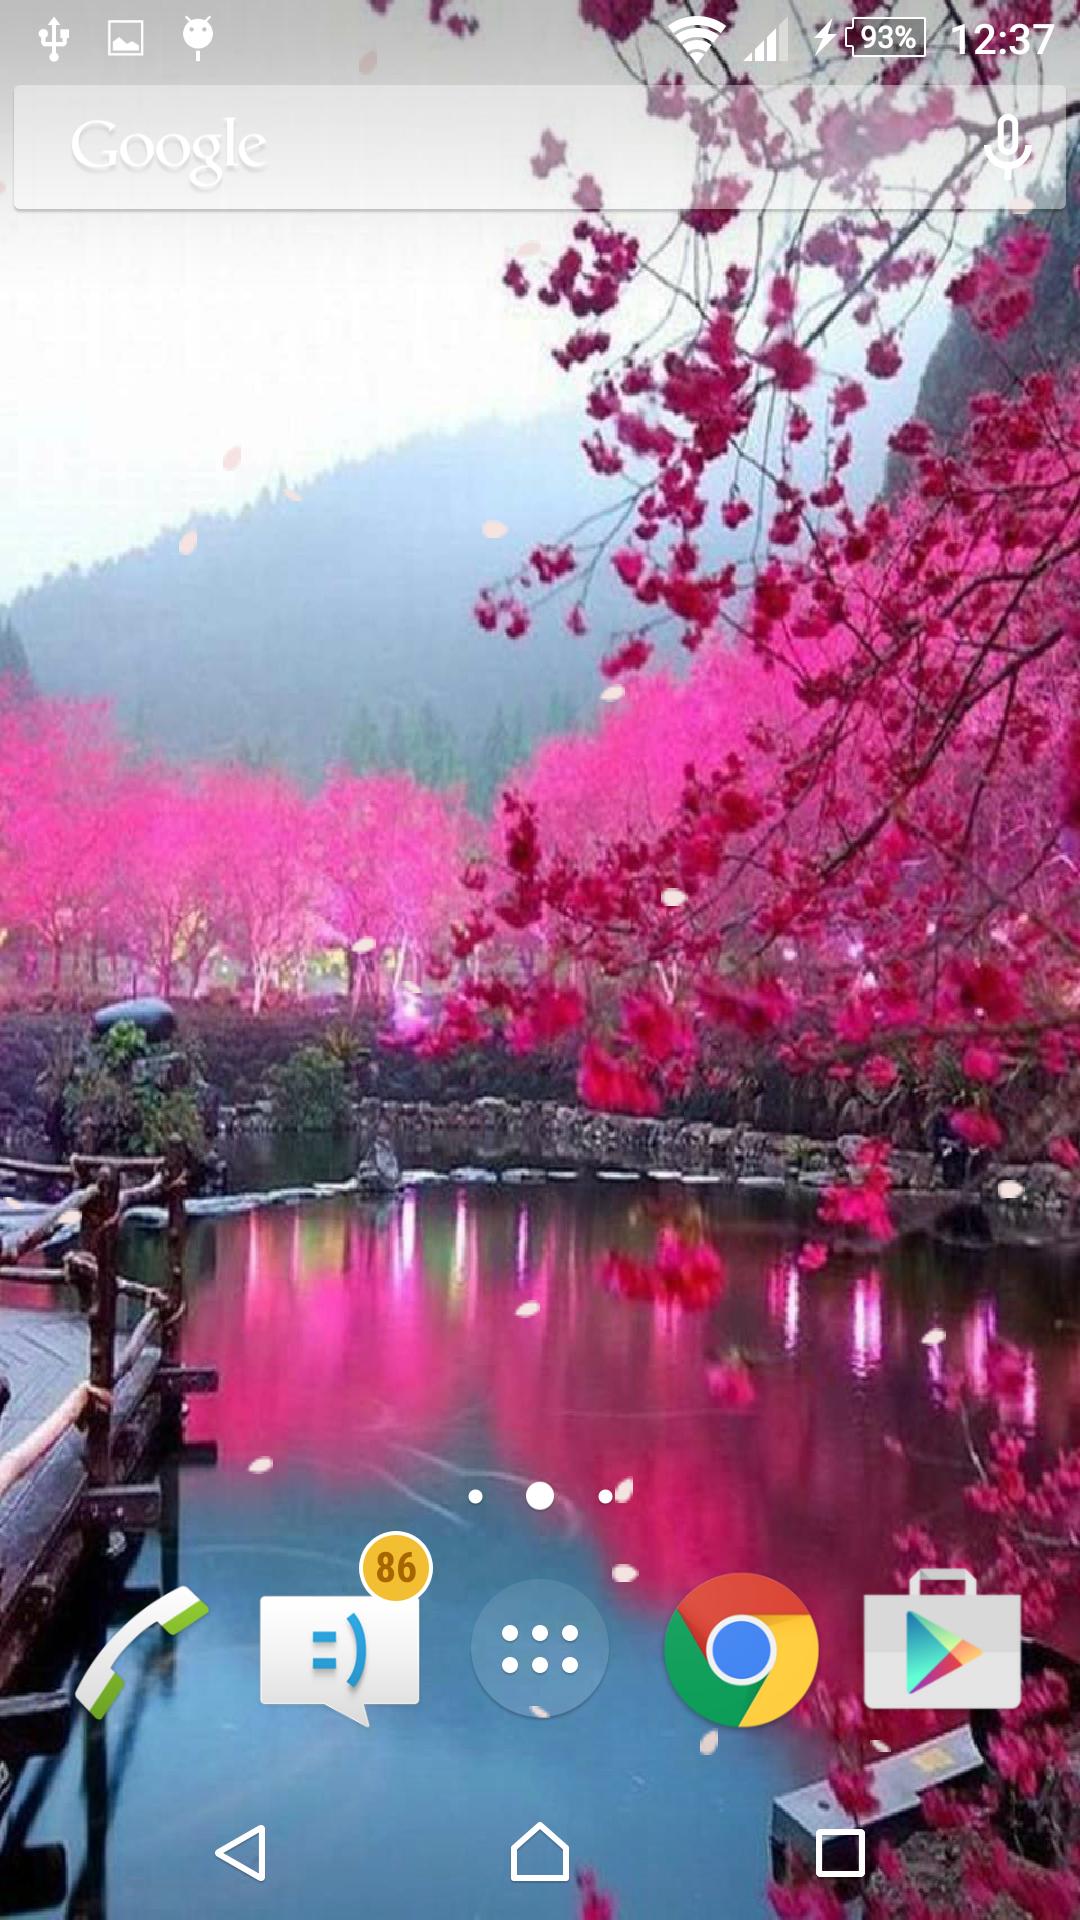 Sakura, hoa anh đào, là biểu tượng của sự thanh khiết và tình yêu. Hãy thưởng thức hình ảnh về nó để cảm nhận rõ nét vẻ đẹp thiên nhiên tuyệt vời này.